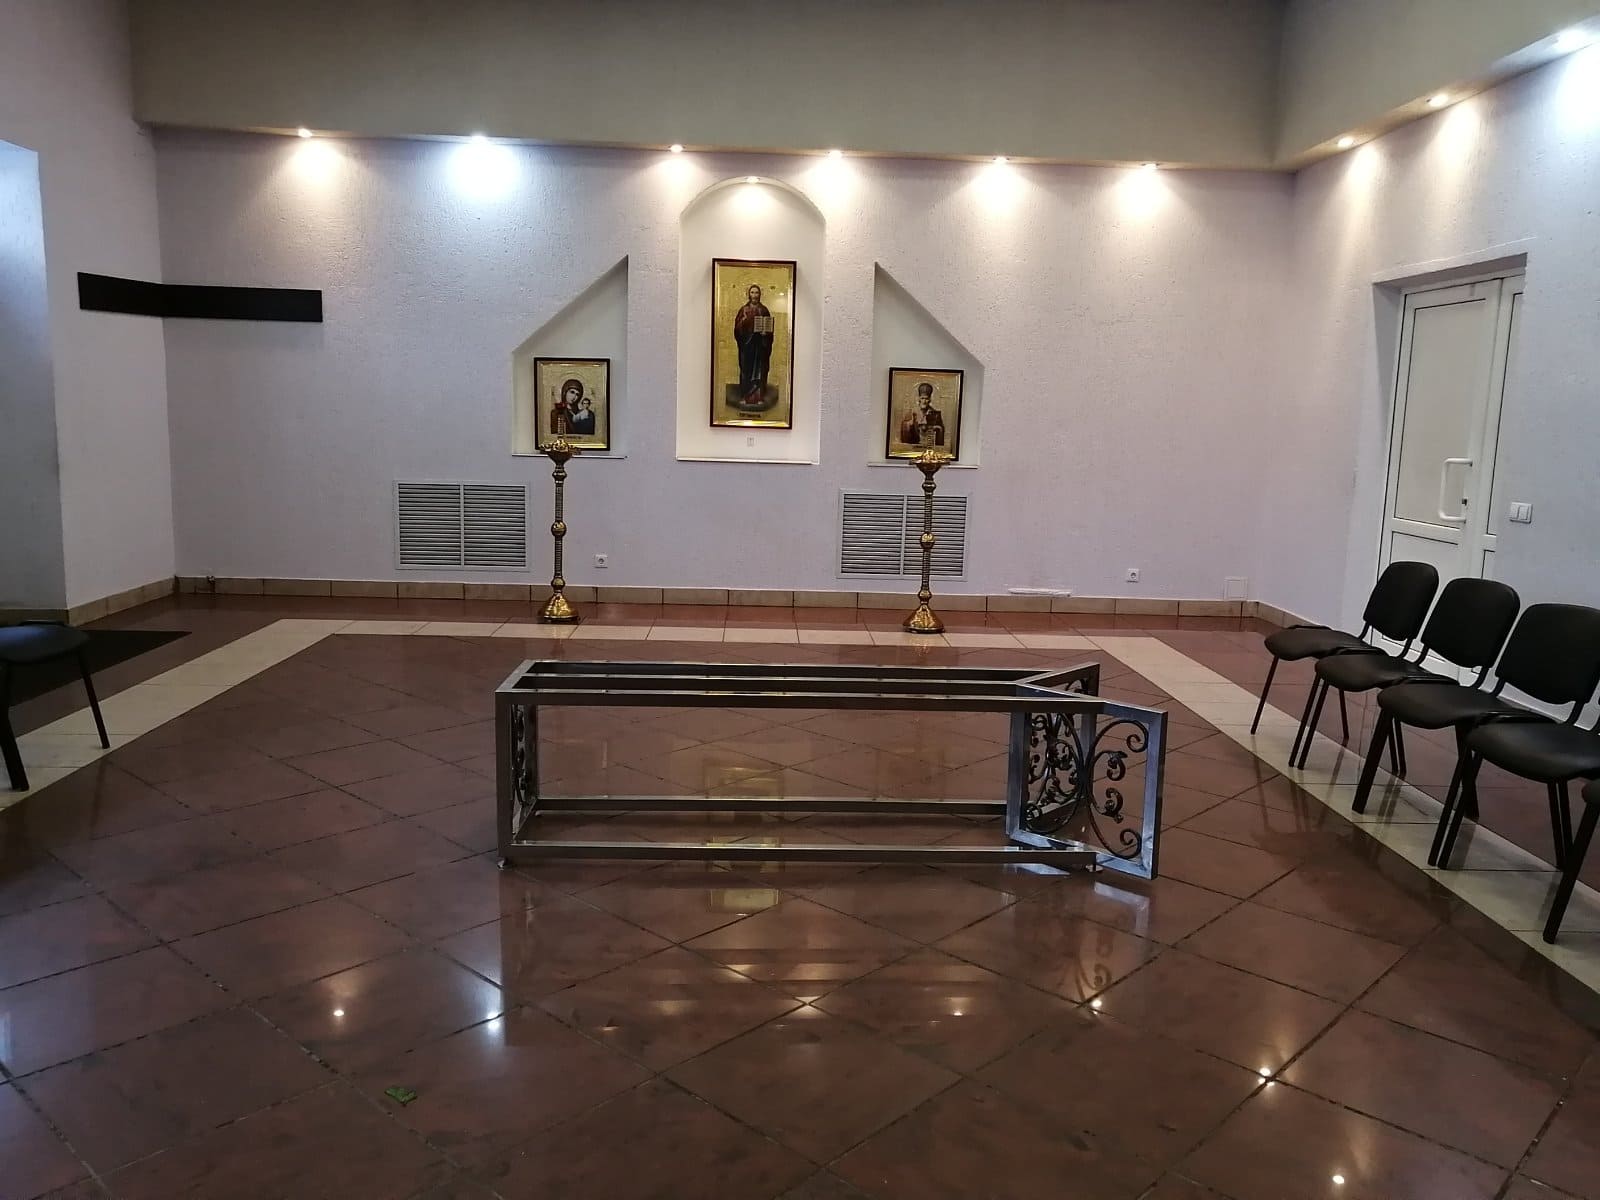 Организация похорон в Минске умершего, цена ритуальных услуг Долгиновский